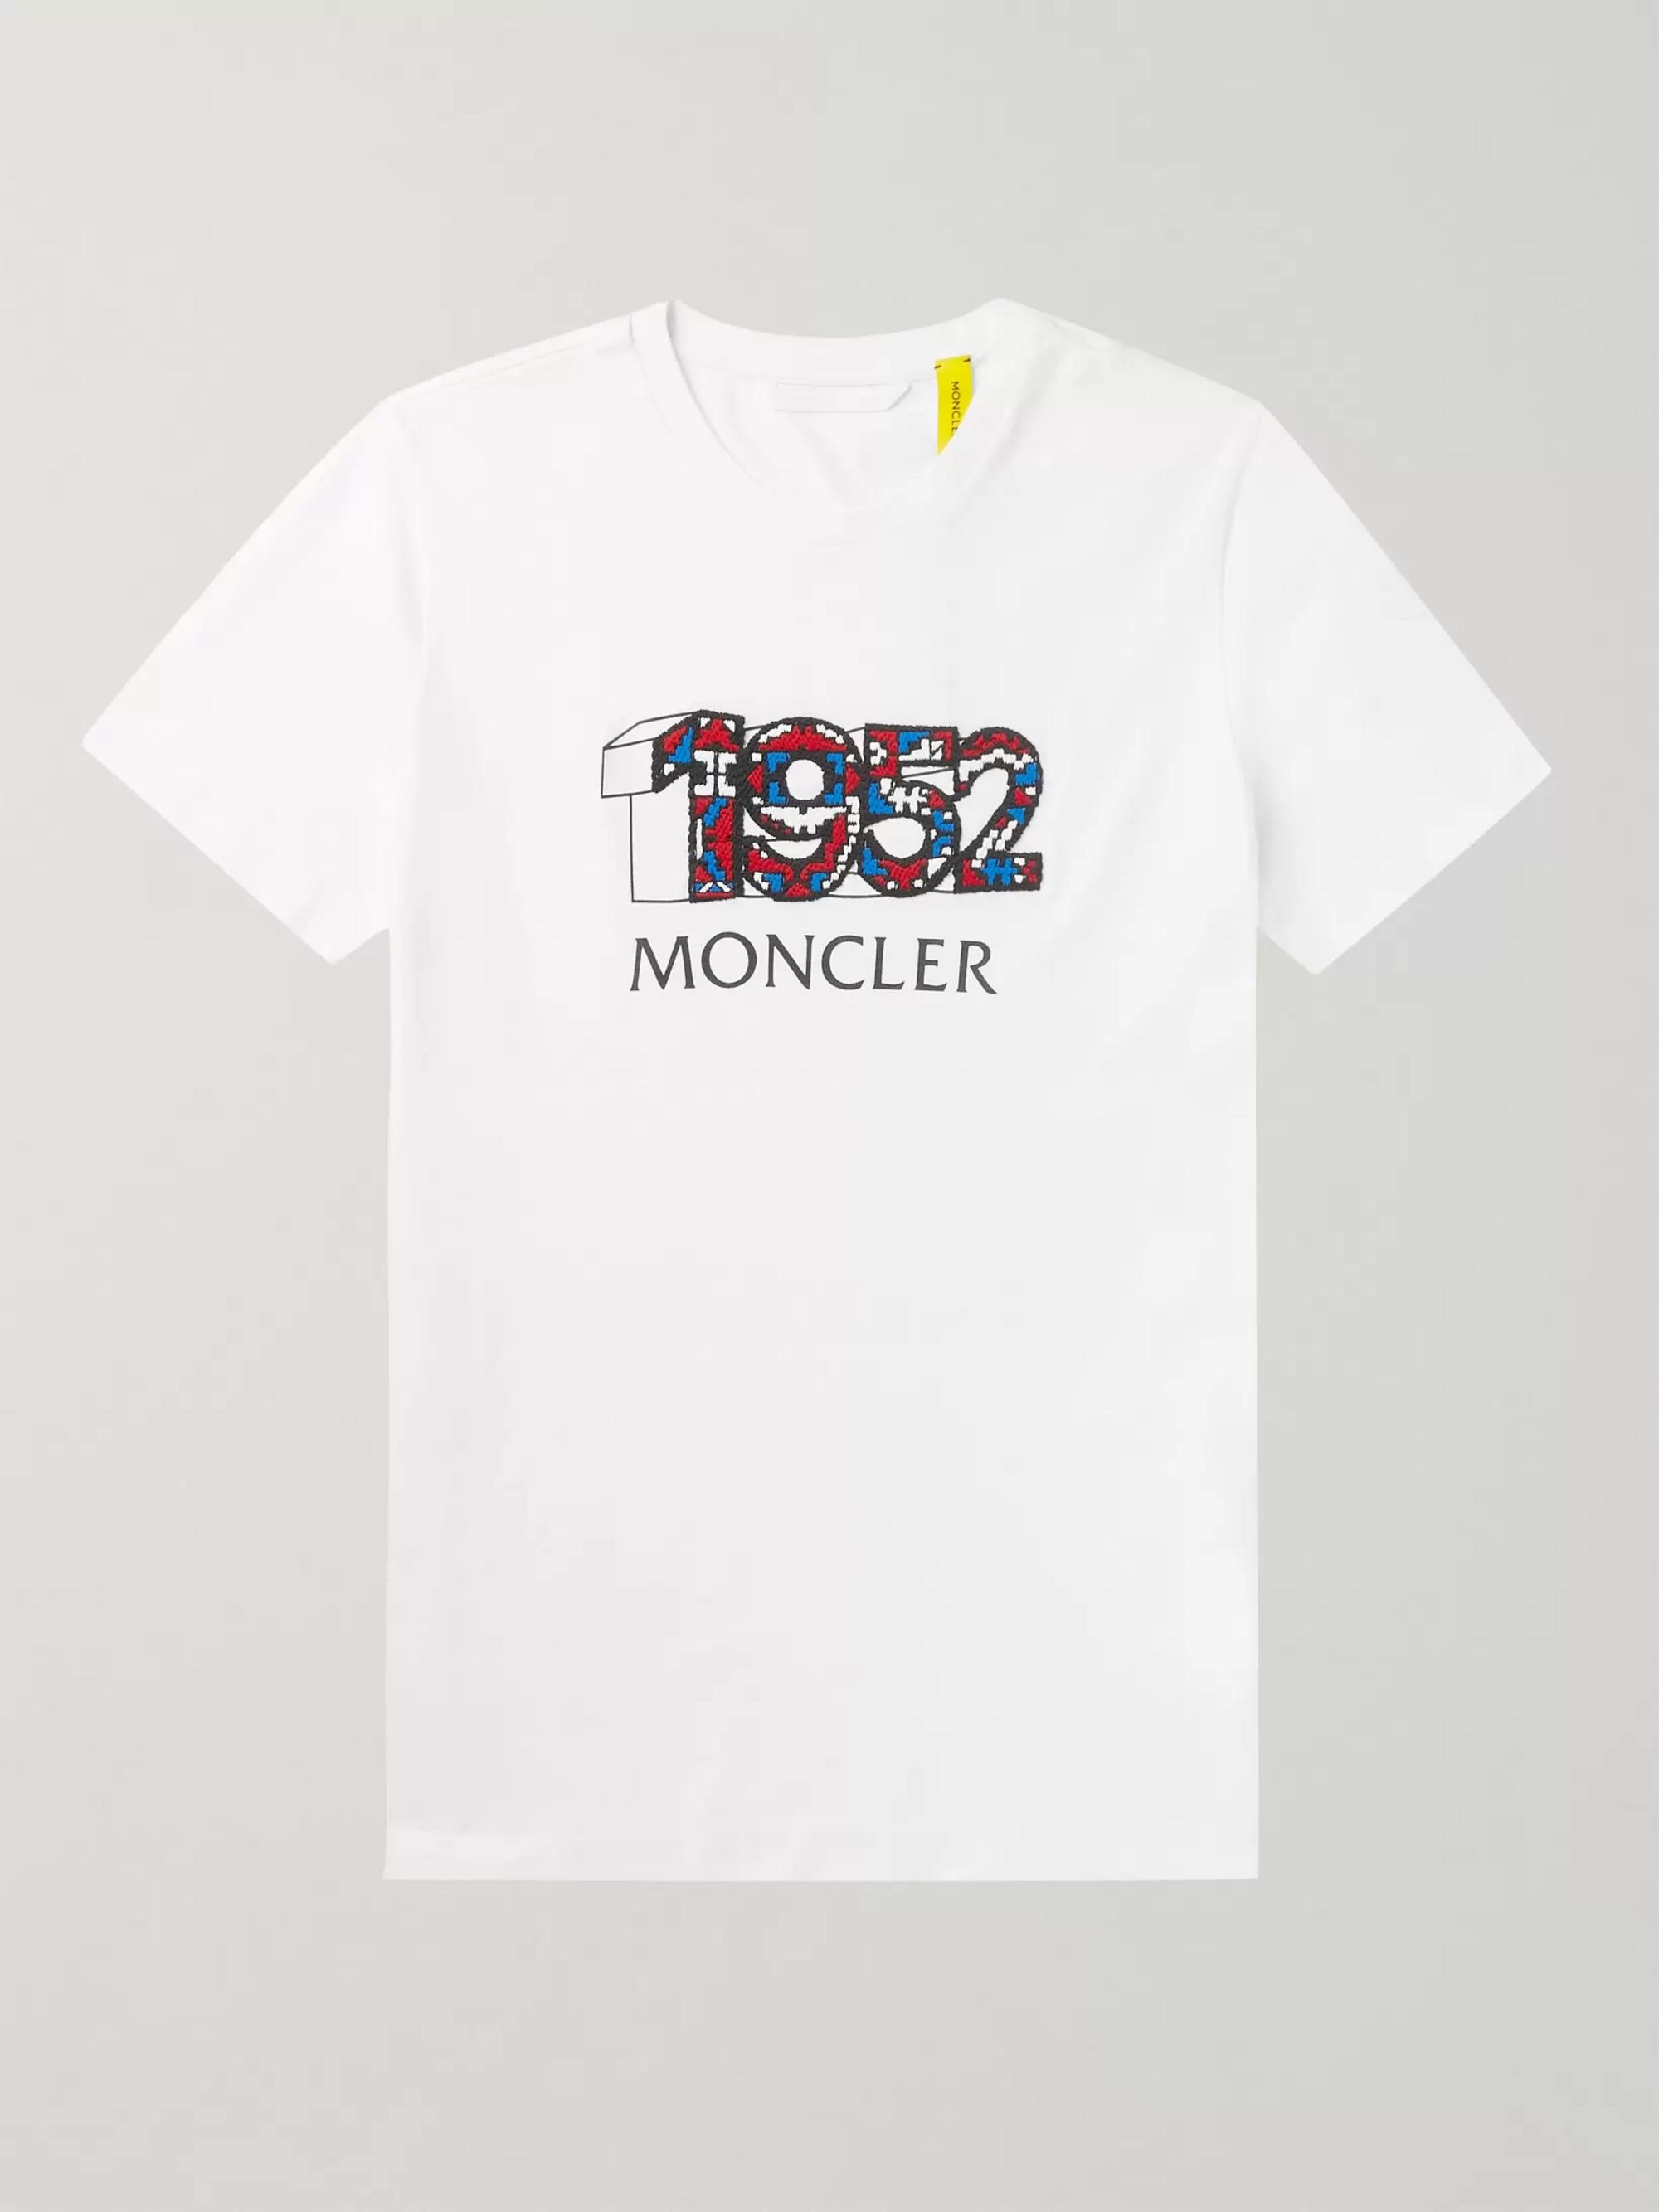 moncler 1952 t shirt